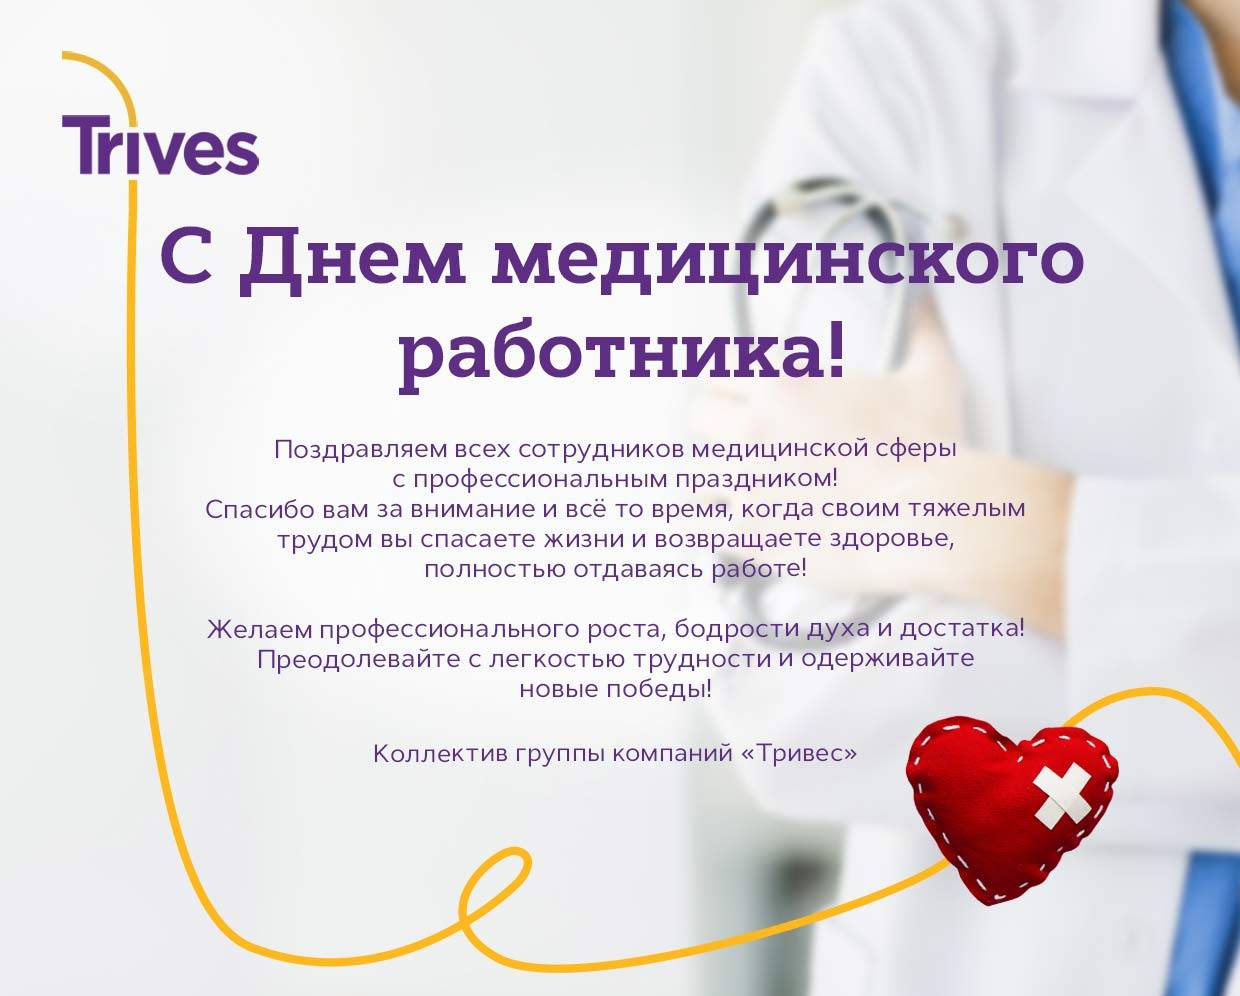 День медика в россии - что это за праздник, когда отмечается день медицинского работника (все даты)
 :: 
 все дни